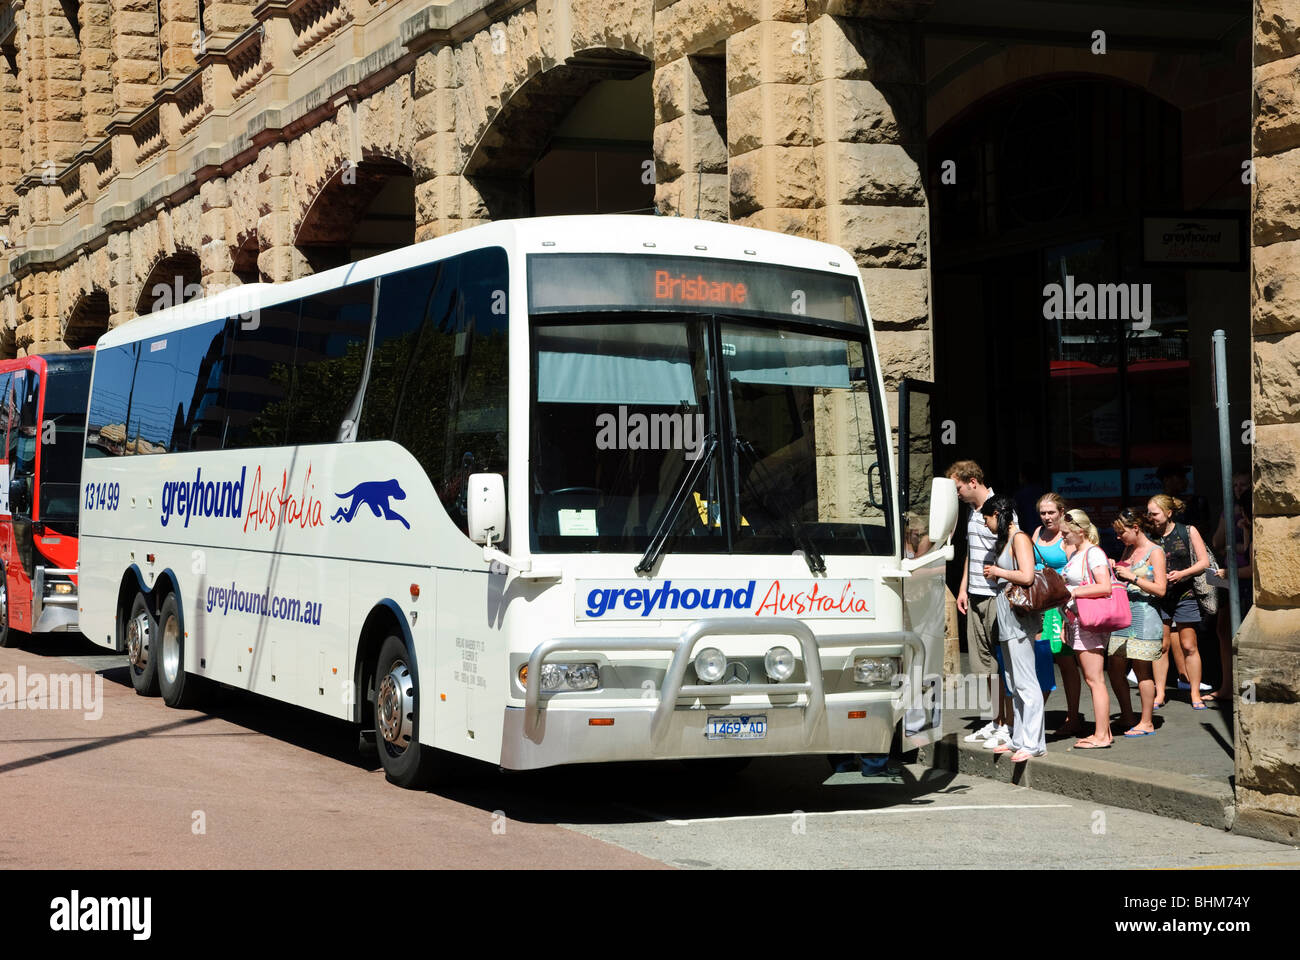 A lunga distanza dei pullman: i passeggeri a bordo di un autobus all'inizio di un viaggio. Il Greyhound Australia; i mezzi di trasporto pubblici; australiano di autobus di linea o granturismo Foto Stock